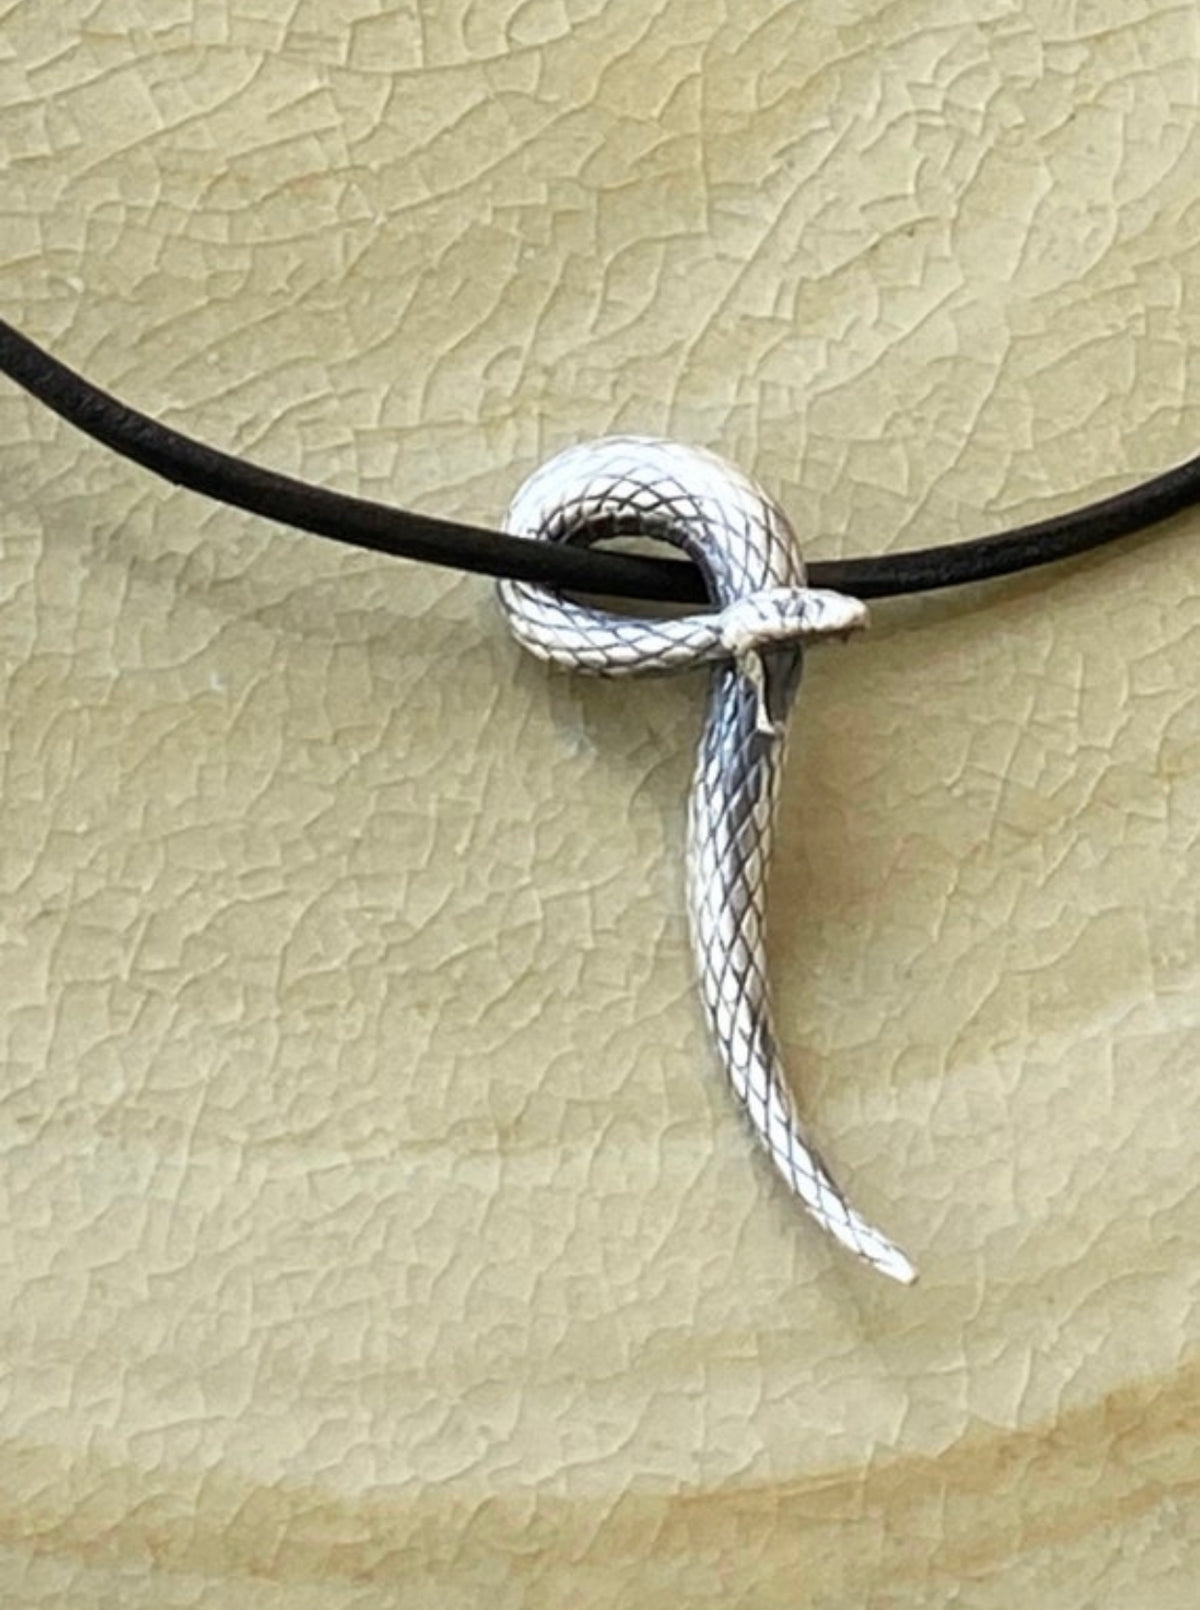 snake necklace silver